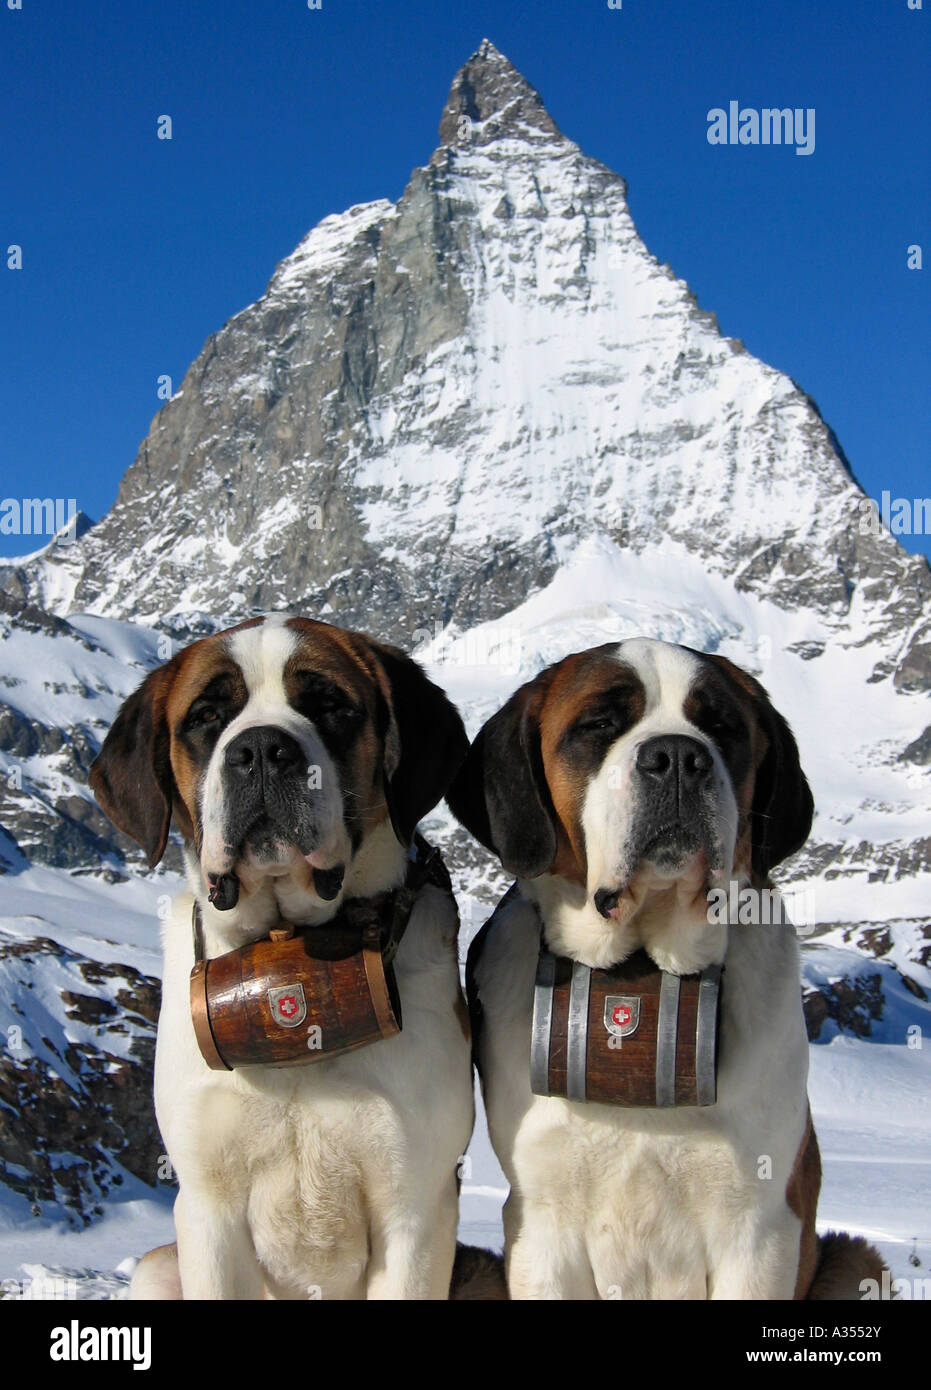 Bernhardiner Hunde im Schnee mit Matterhorn Berg im Hintergrund, Schweiz  Stockfotografie - Alamy